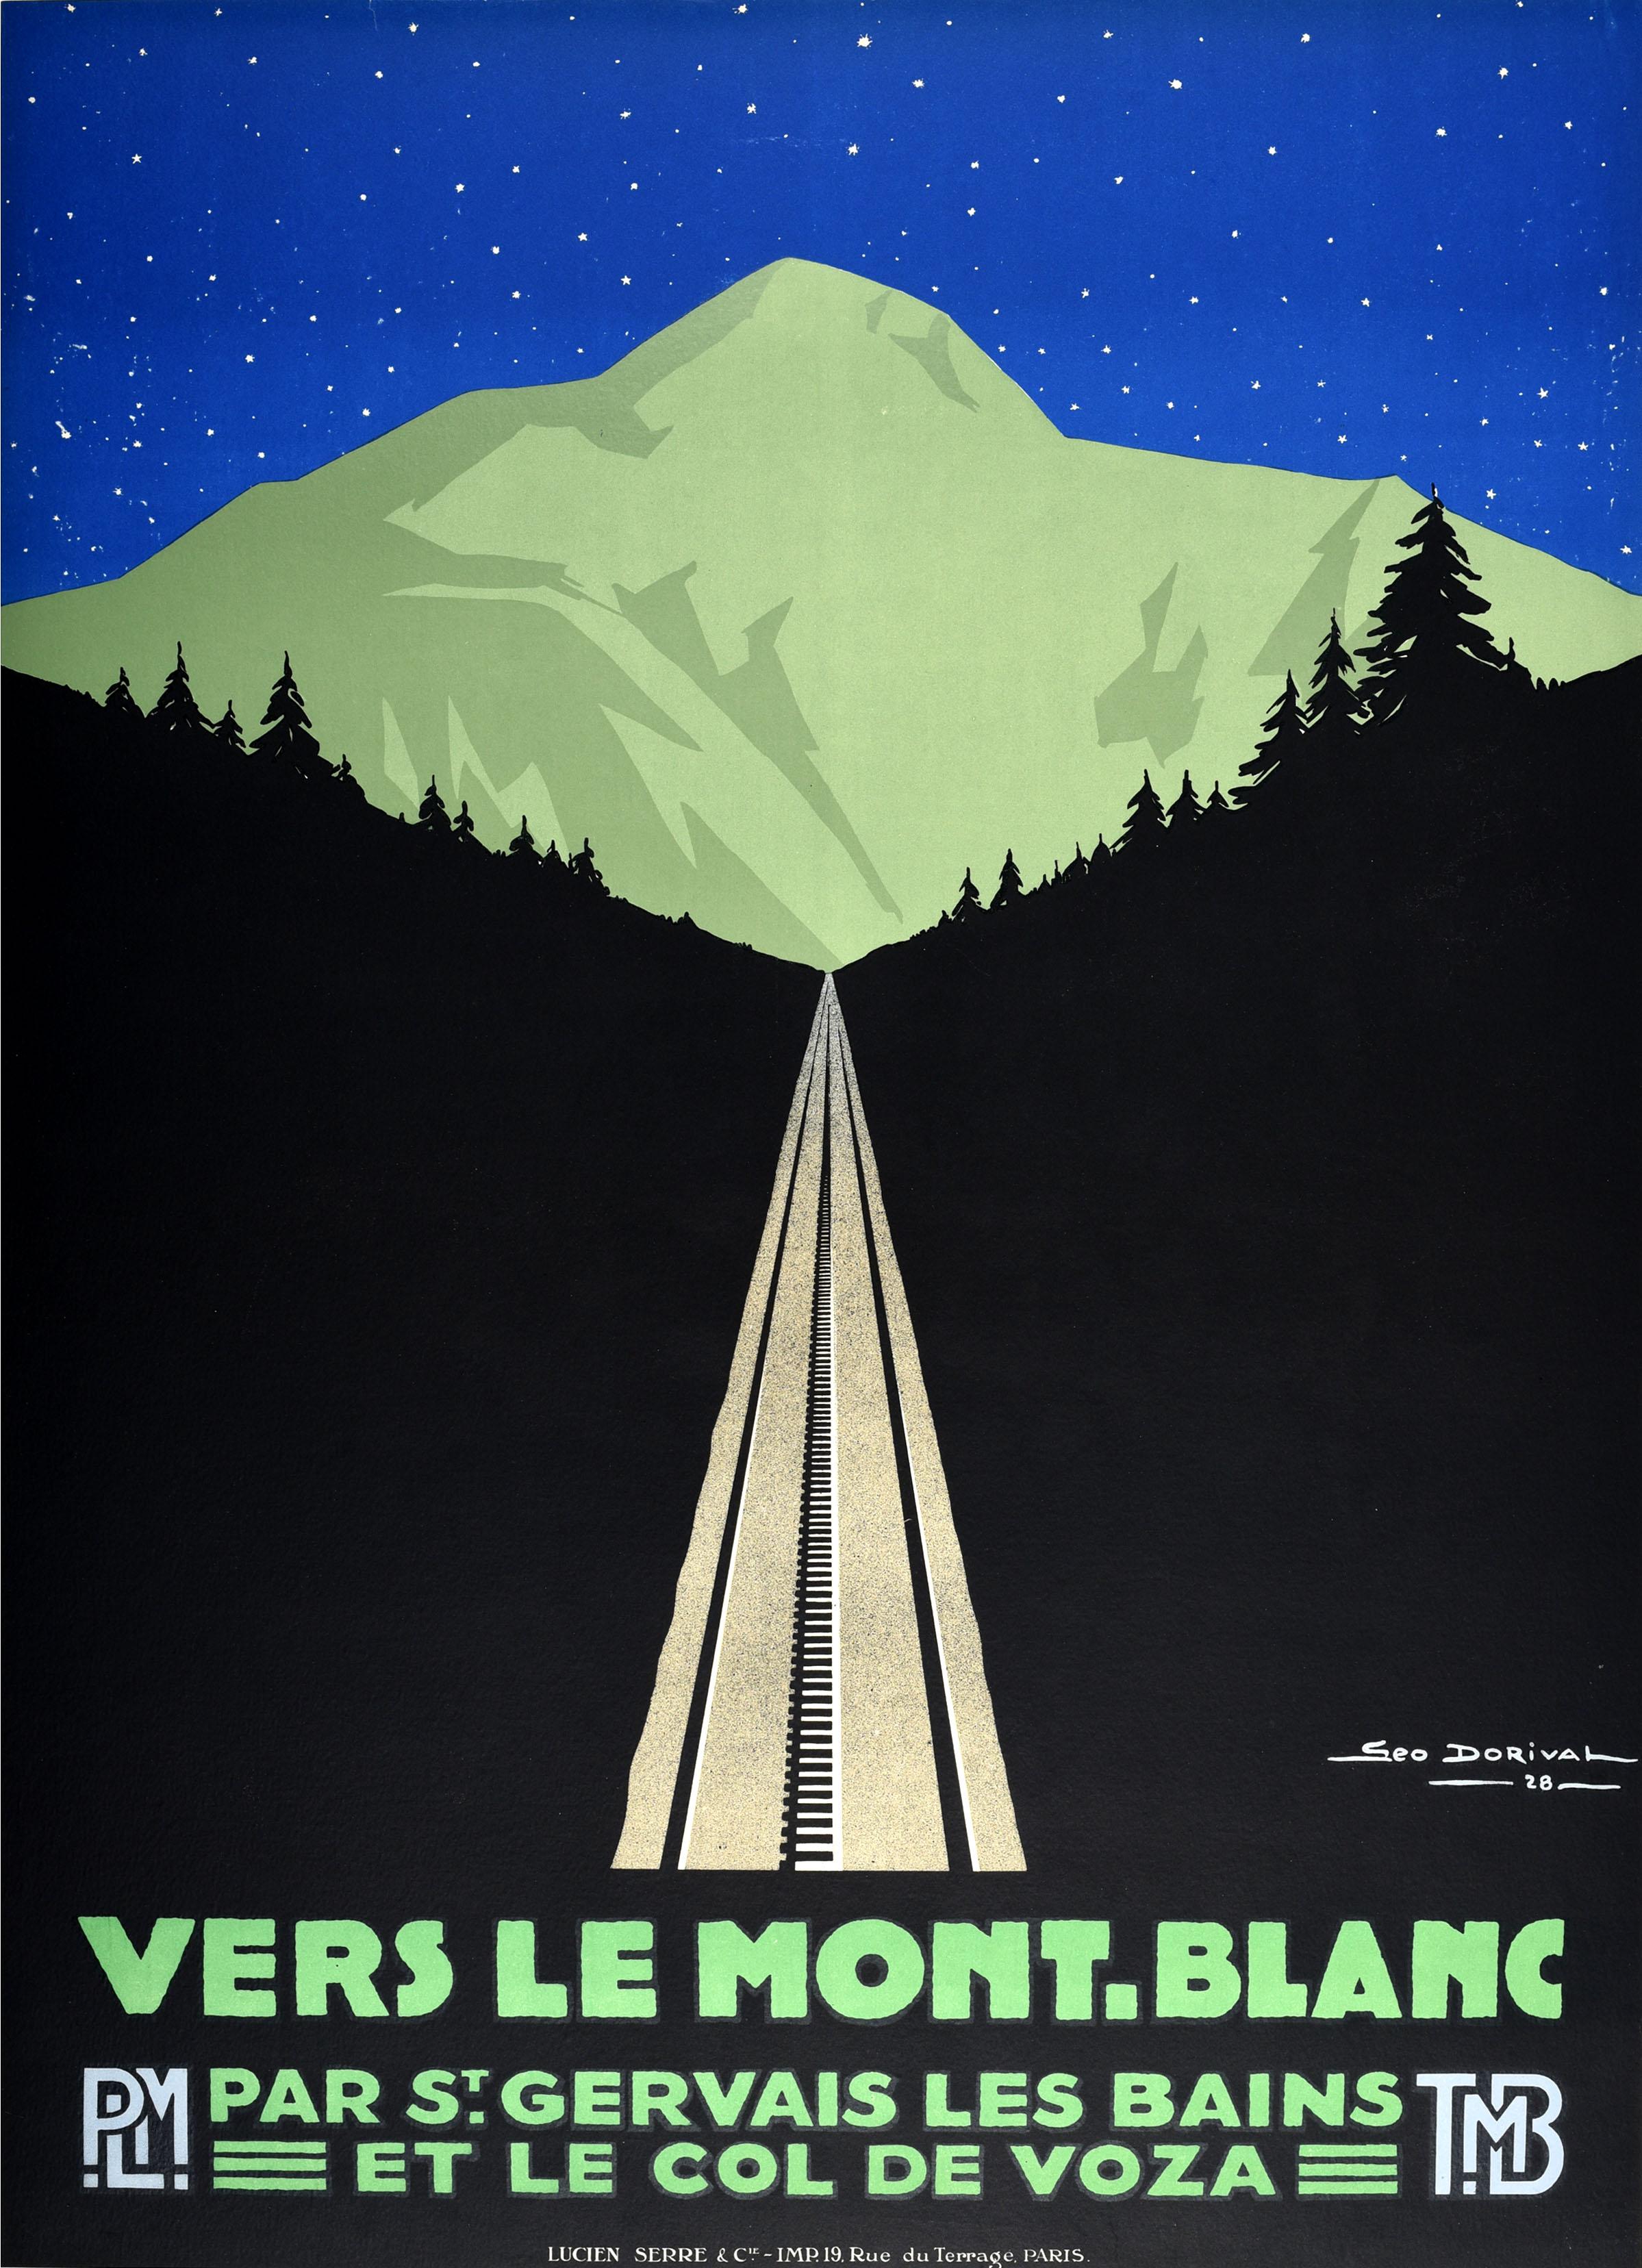 Ensemble de trois affiches publicitaires vintage originales de voyage publiées par la société PLM Paris Lyon Mediterranee railway et le TMB Mont Blanc Tramway pour Mont Blanc (la plus haute montagne d'Europe), via St Gervais Les Bains et le Col de